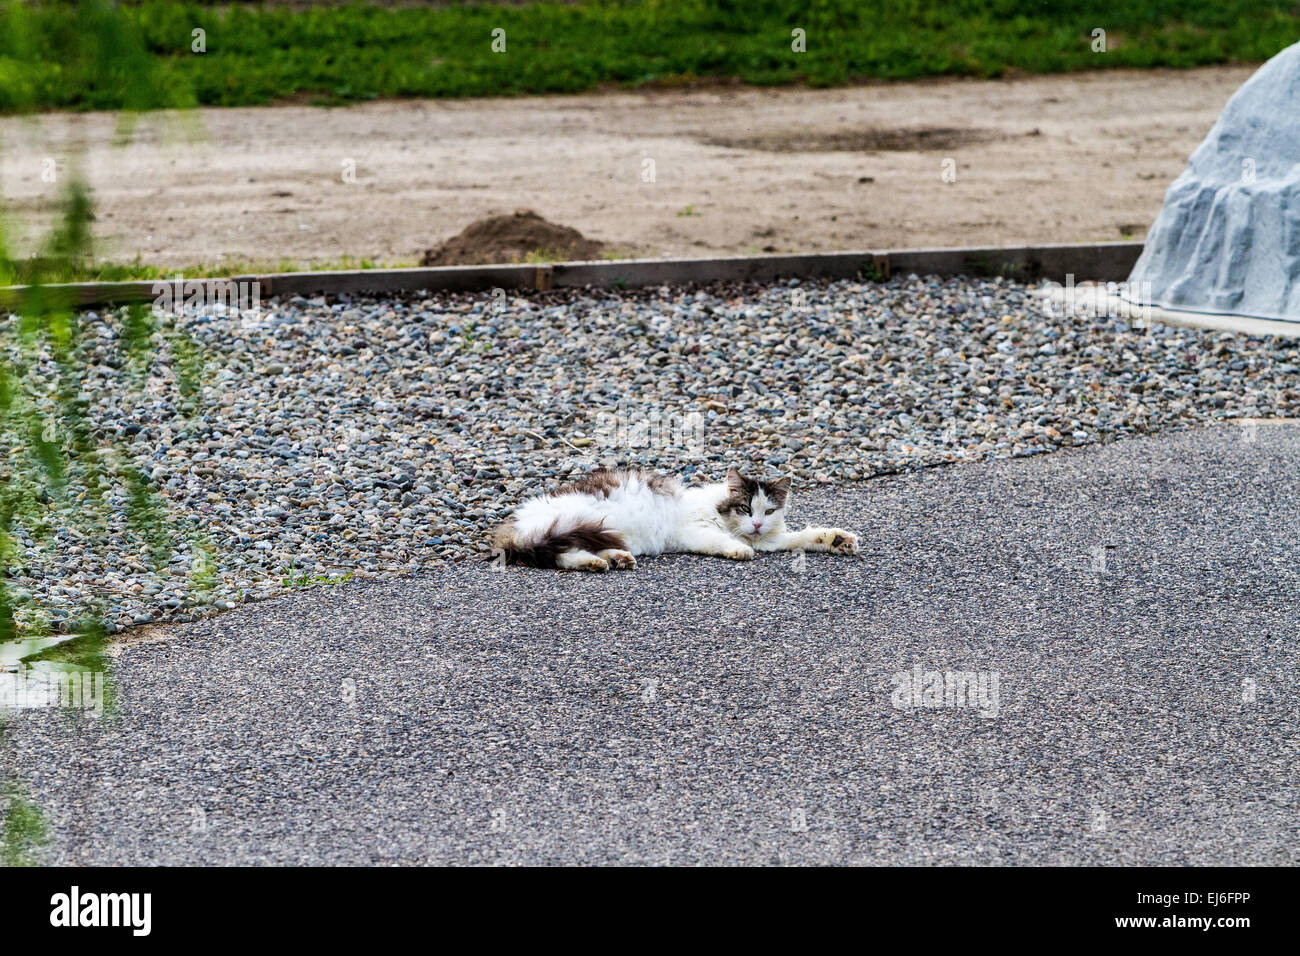 Un chat se faisant passer pour morte qu'une stratégie de chasse Banque D'Images